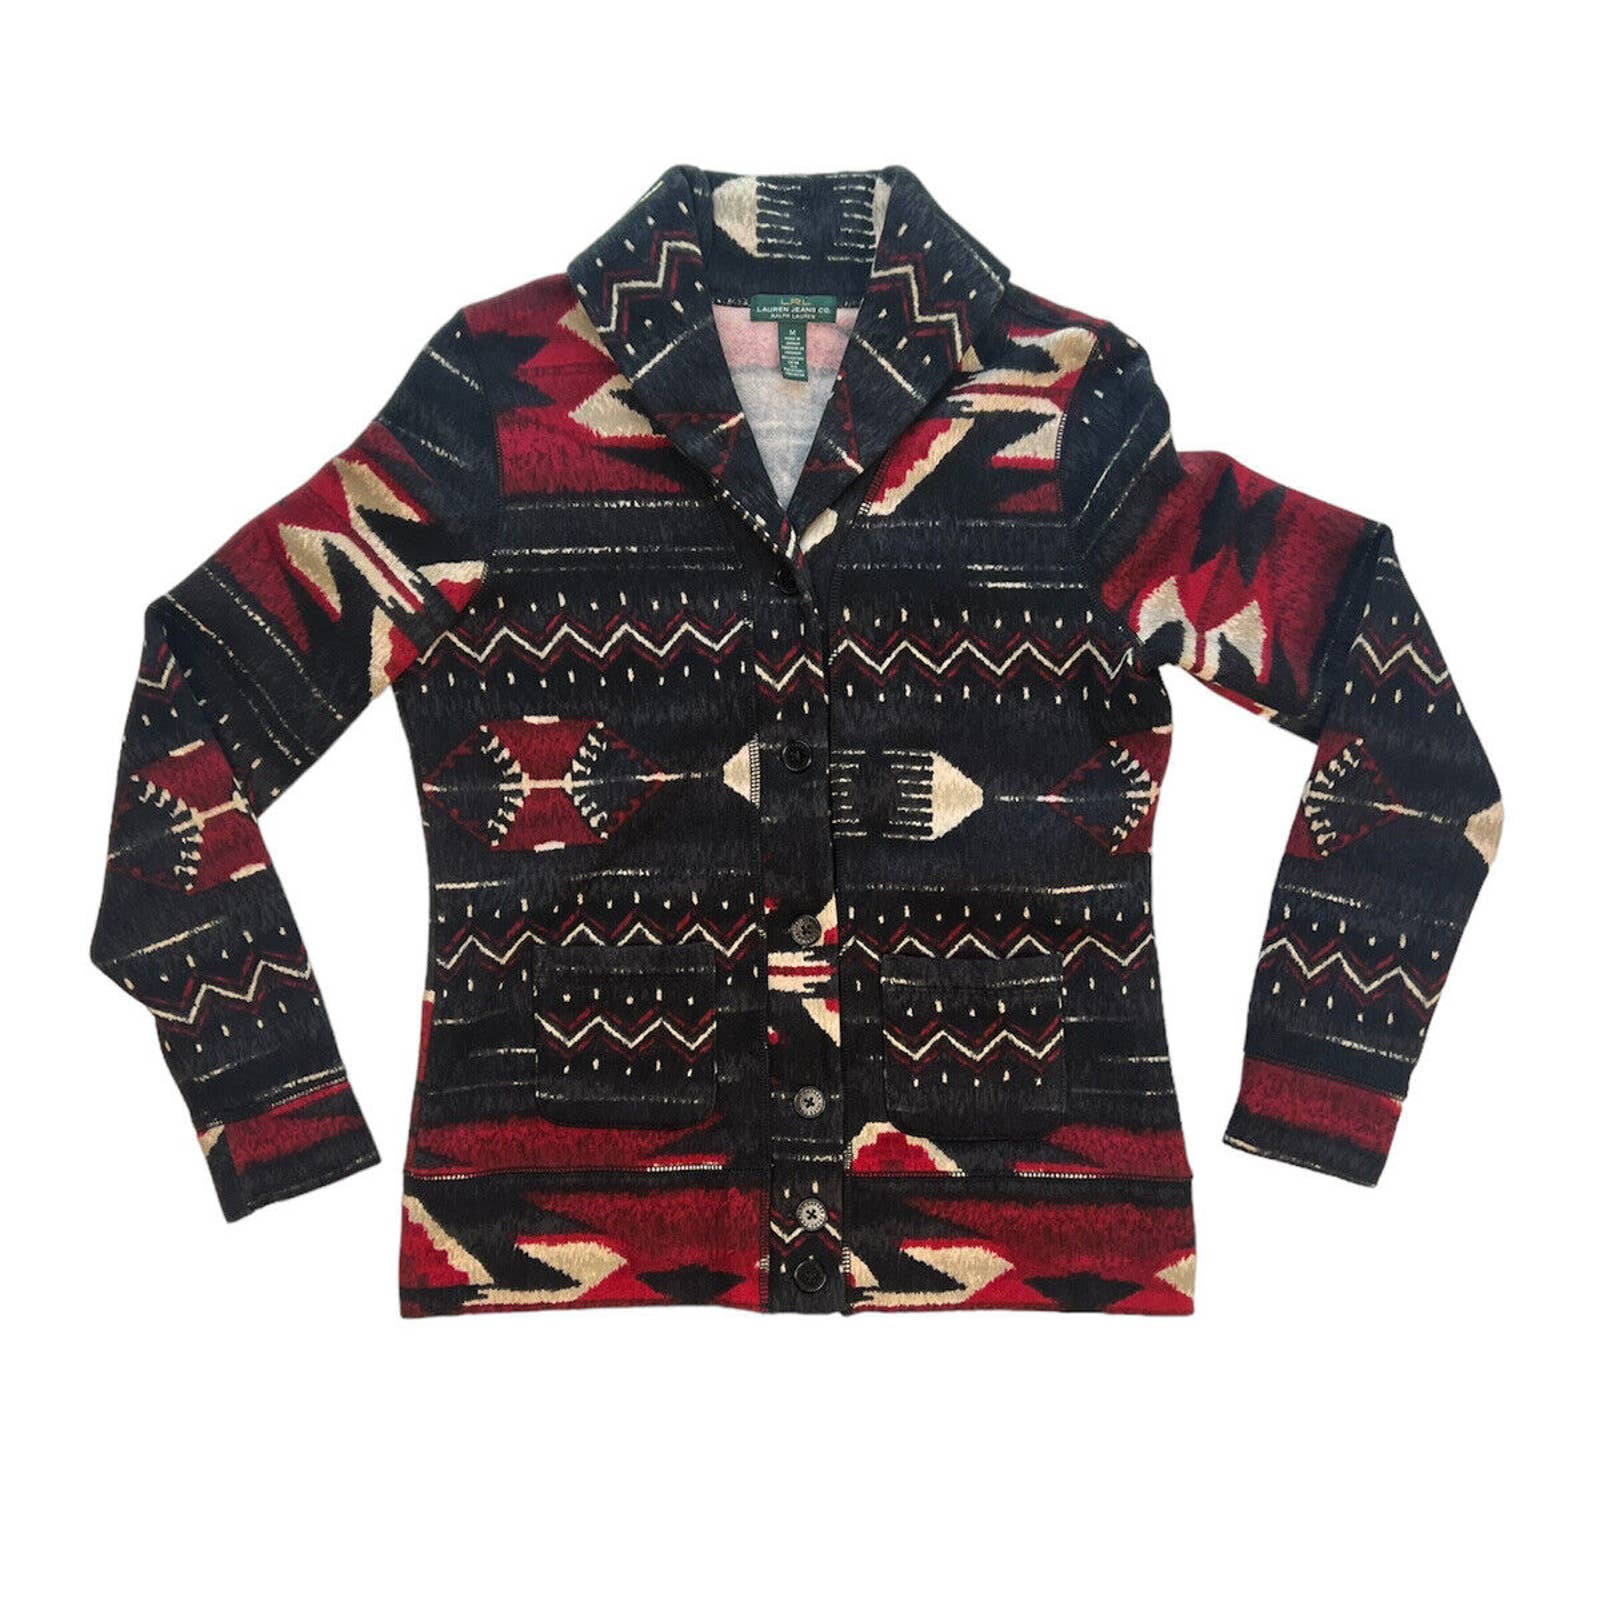 Lauren Ralph Lauren Jacket Women’s Medium Fleece Cardigan Sweater